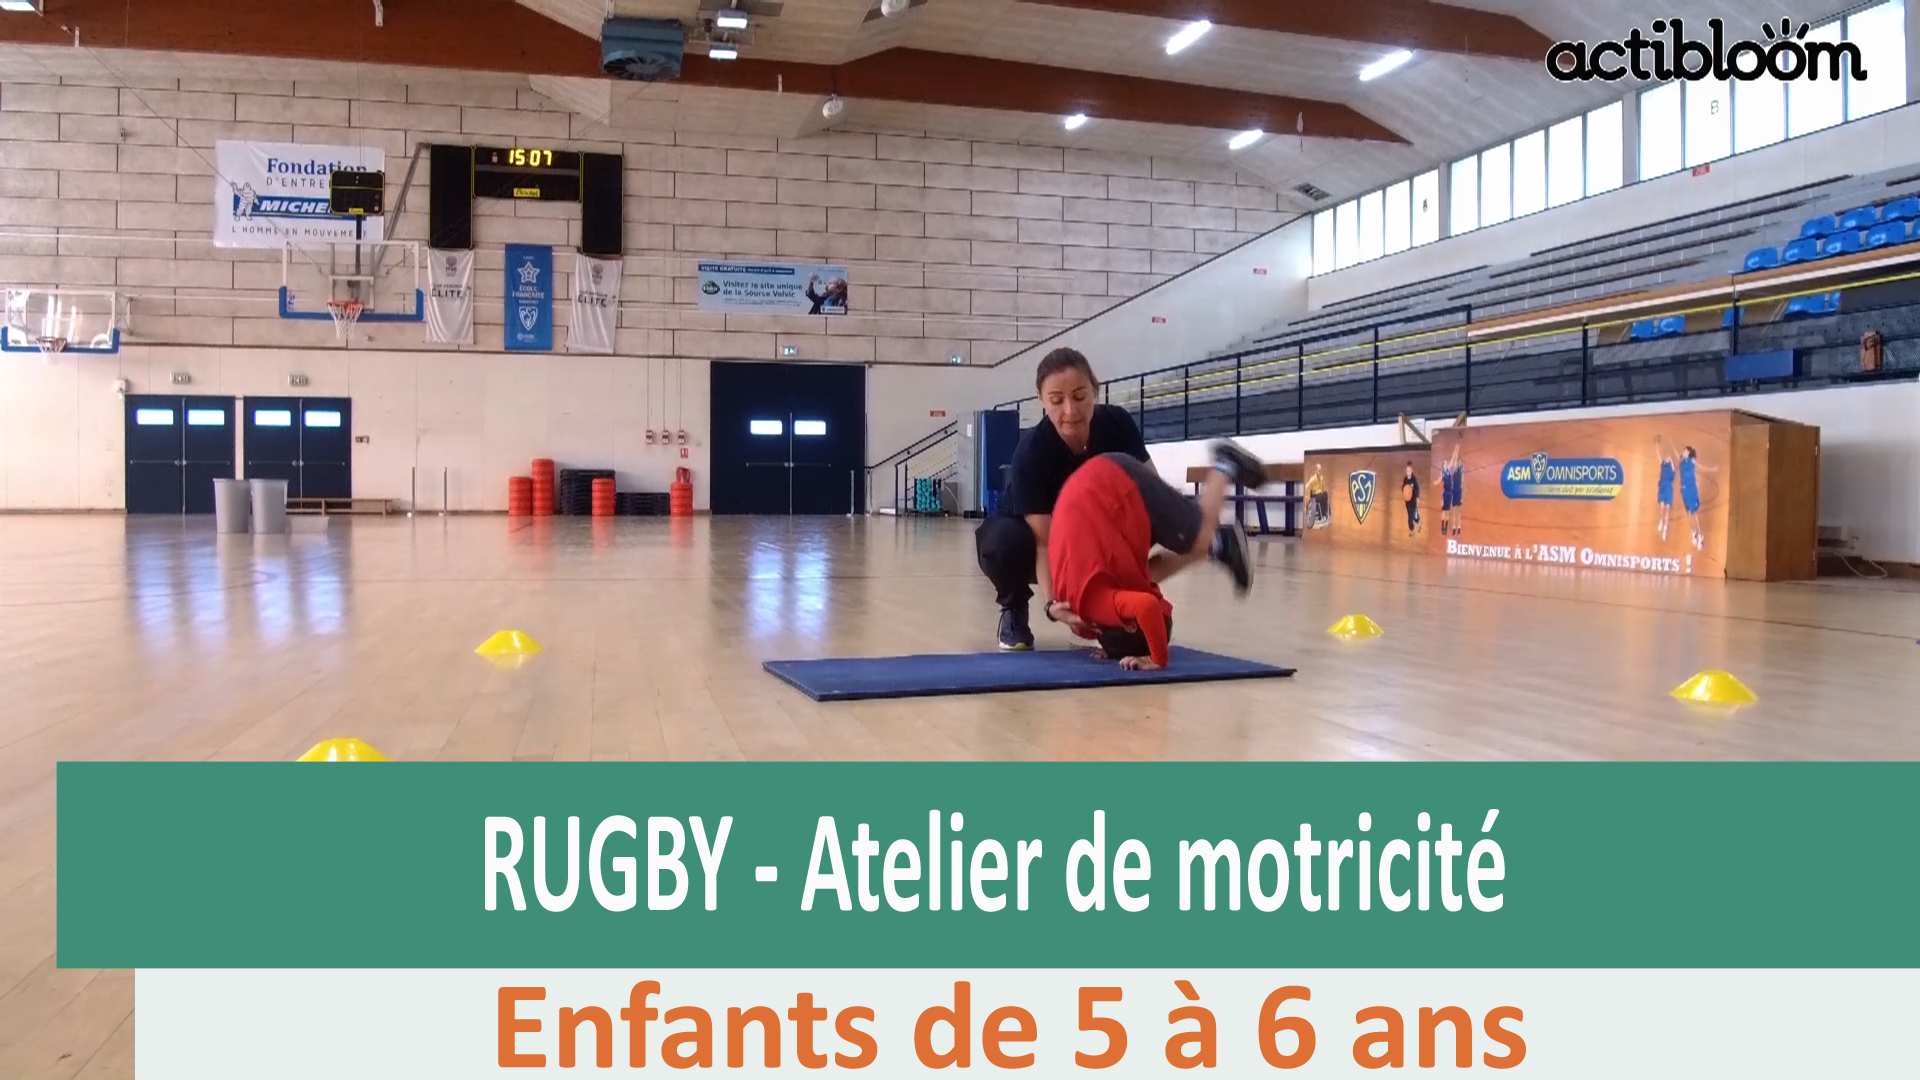 Initiation Au Rugby : Atelier De Motricité | Actibloom destiné Atelier De Motricité